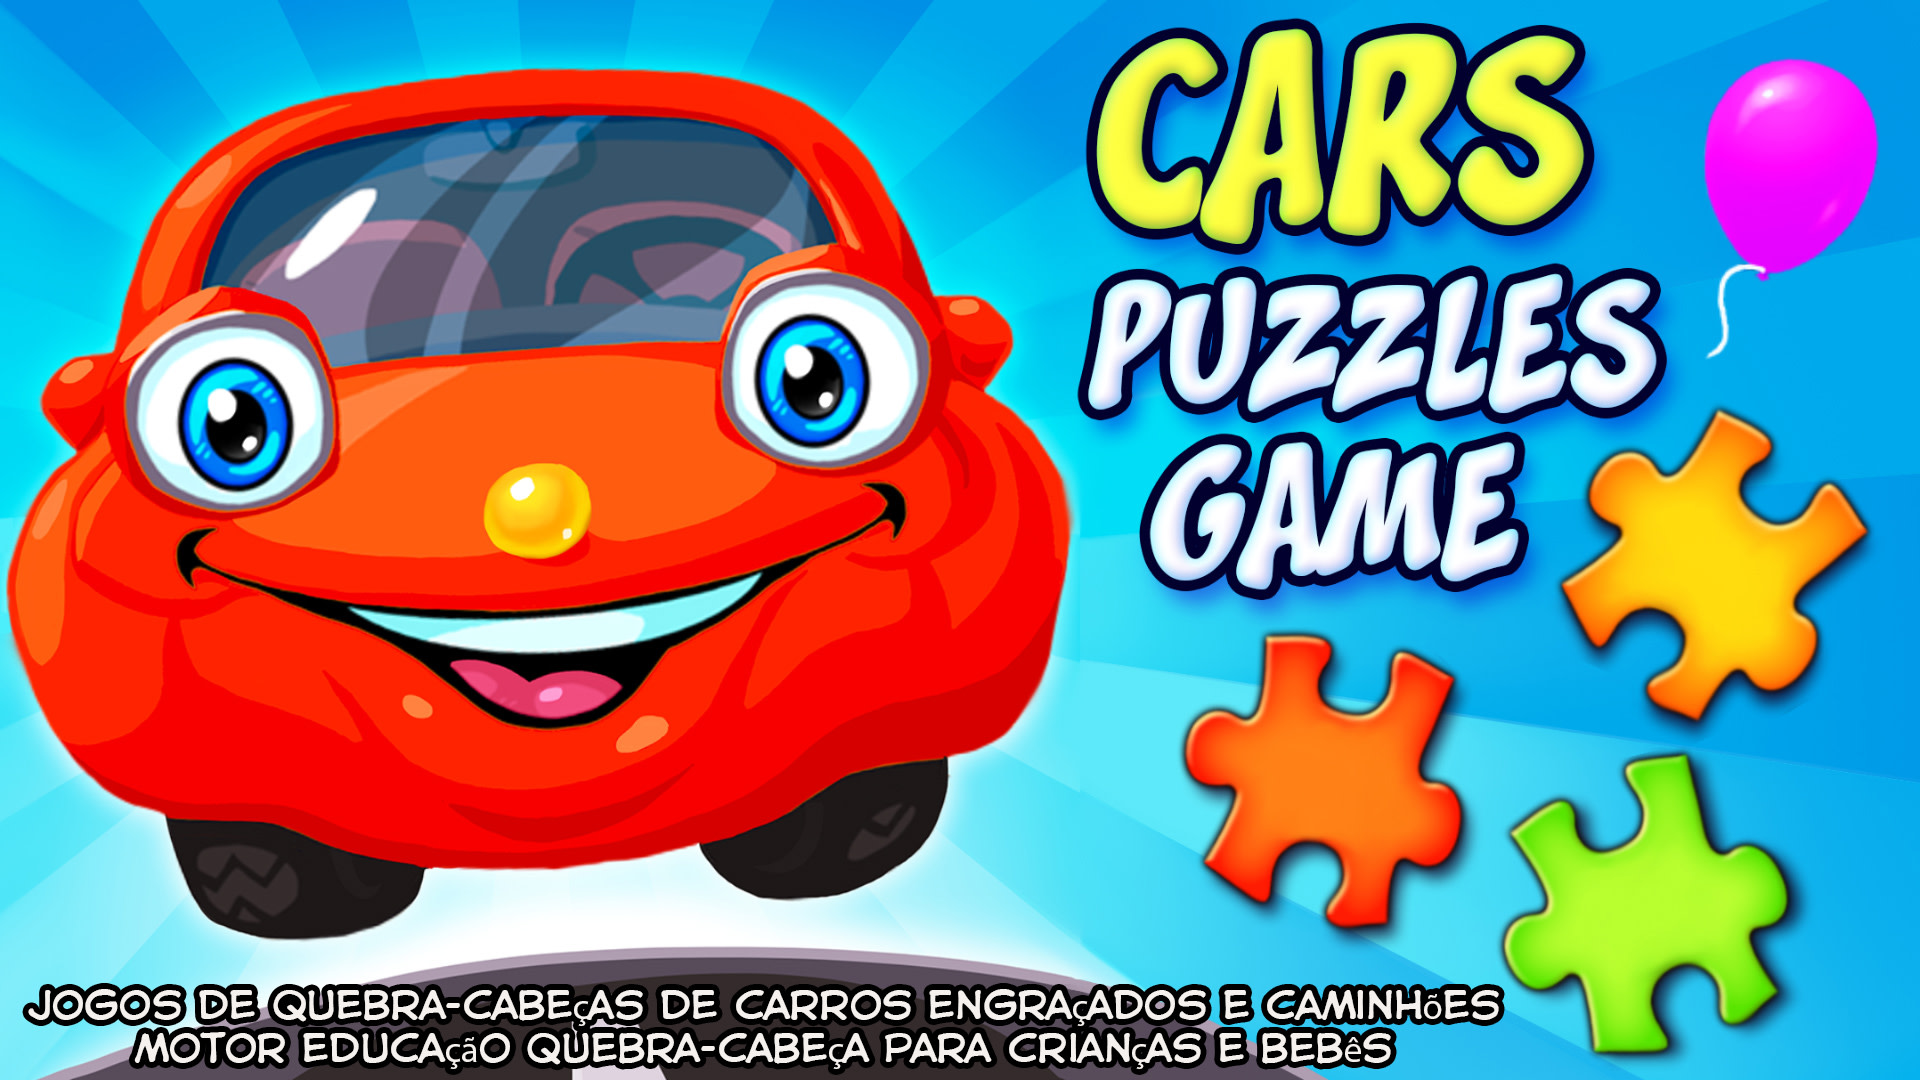 Cars Puzzles Game - jogos de quebra-cabeças de carros engraçados e caminhões motor educação quebra-cabeça para crianças e bebês